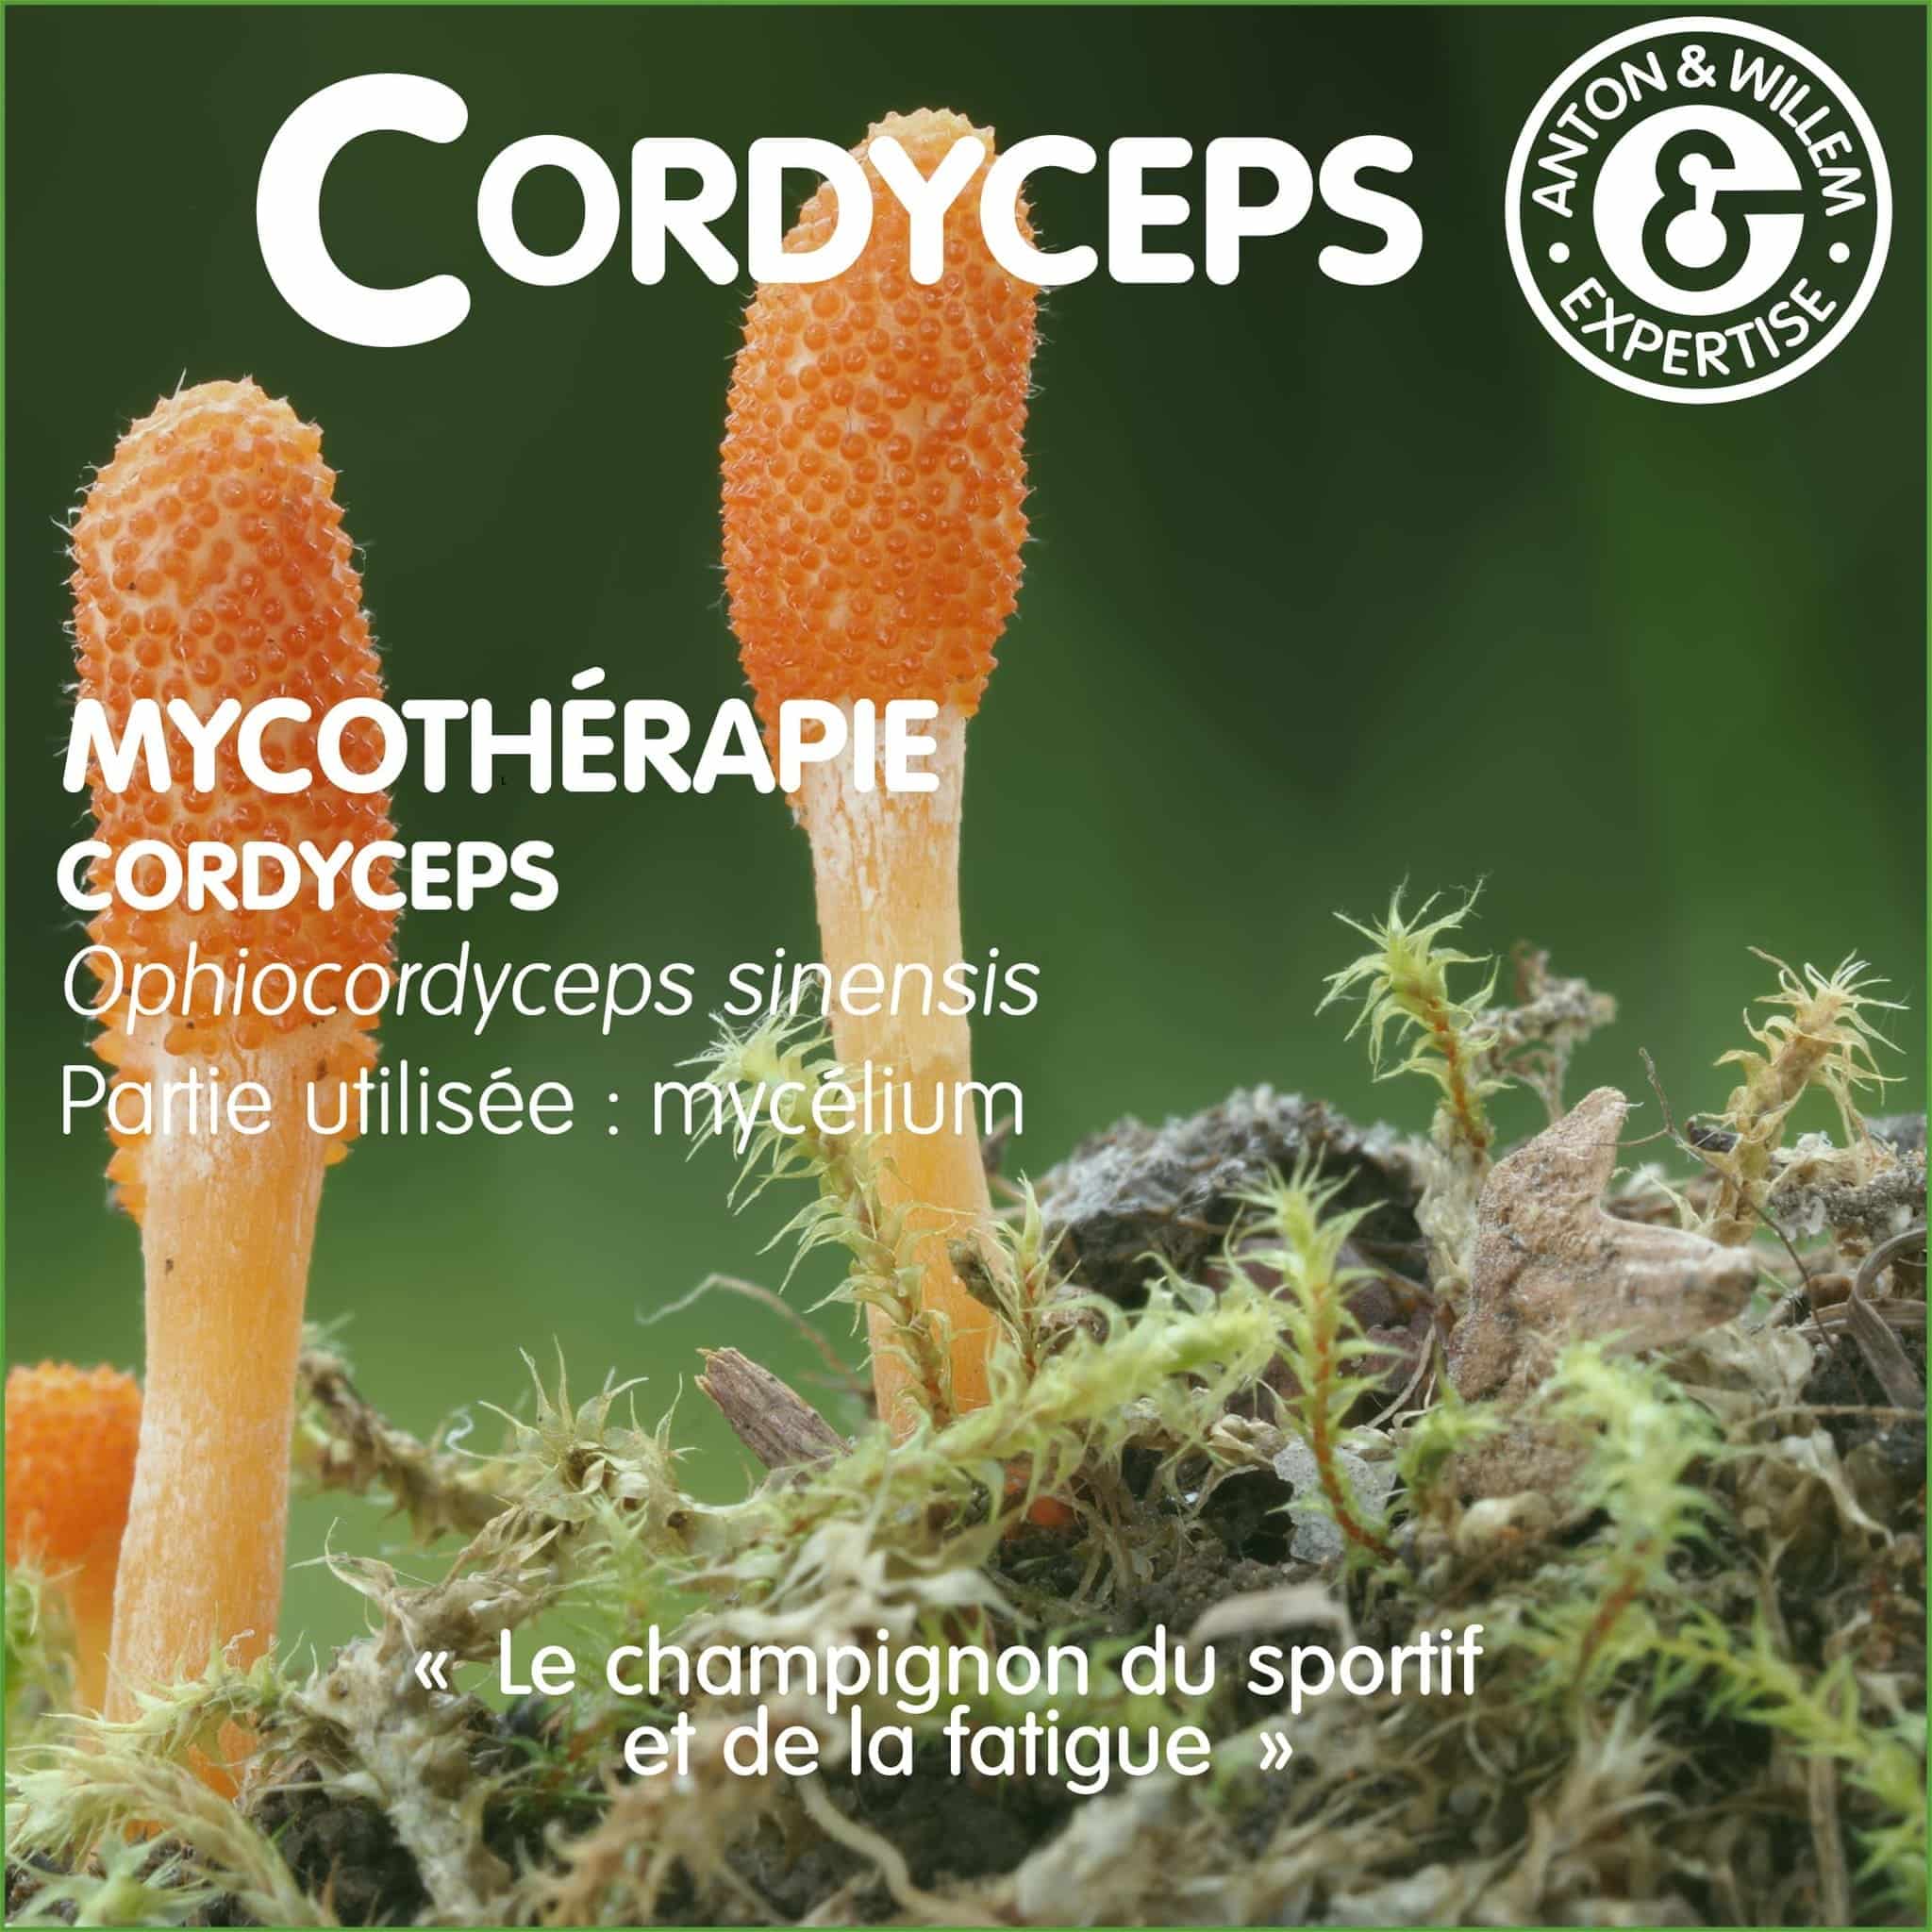 Cordycepts en mycothérapie